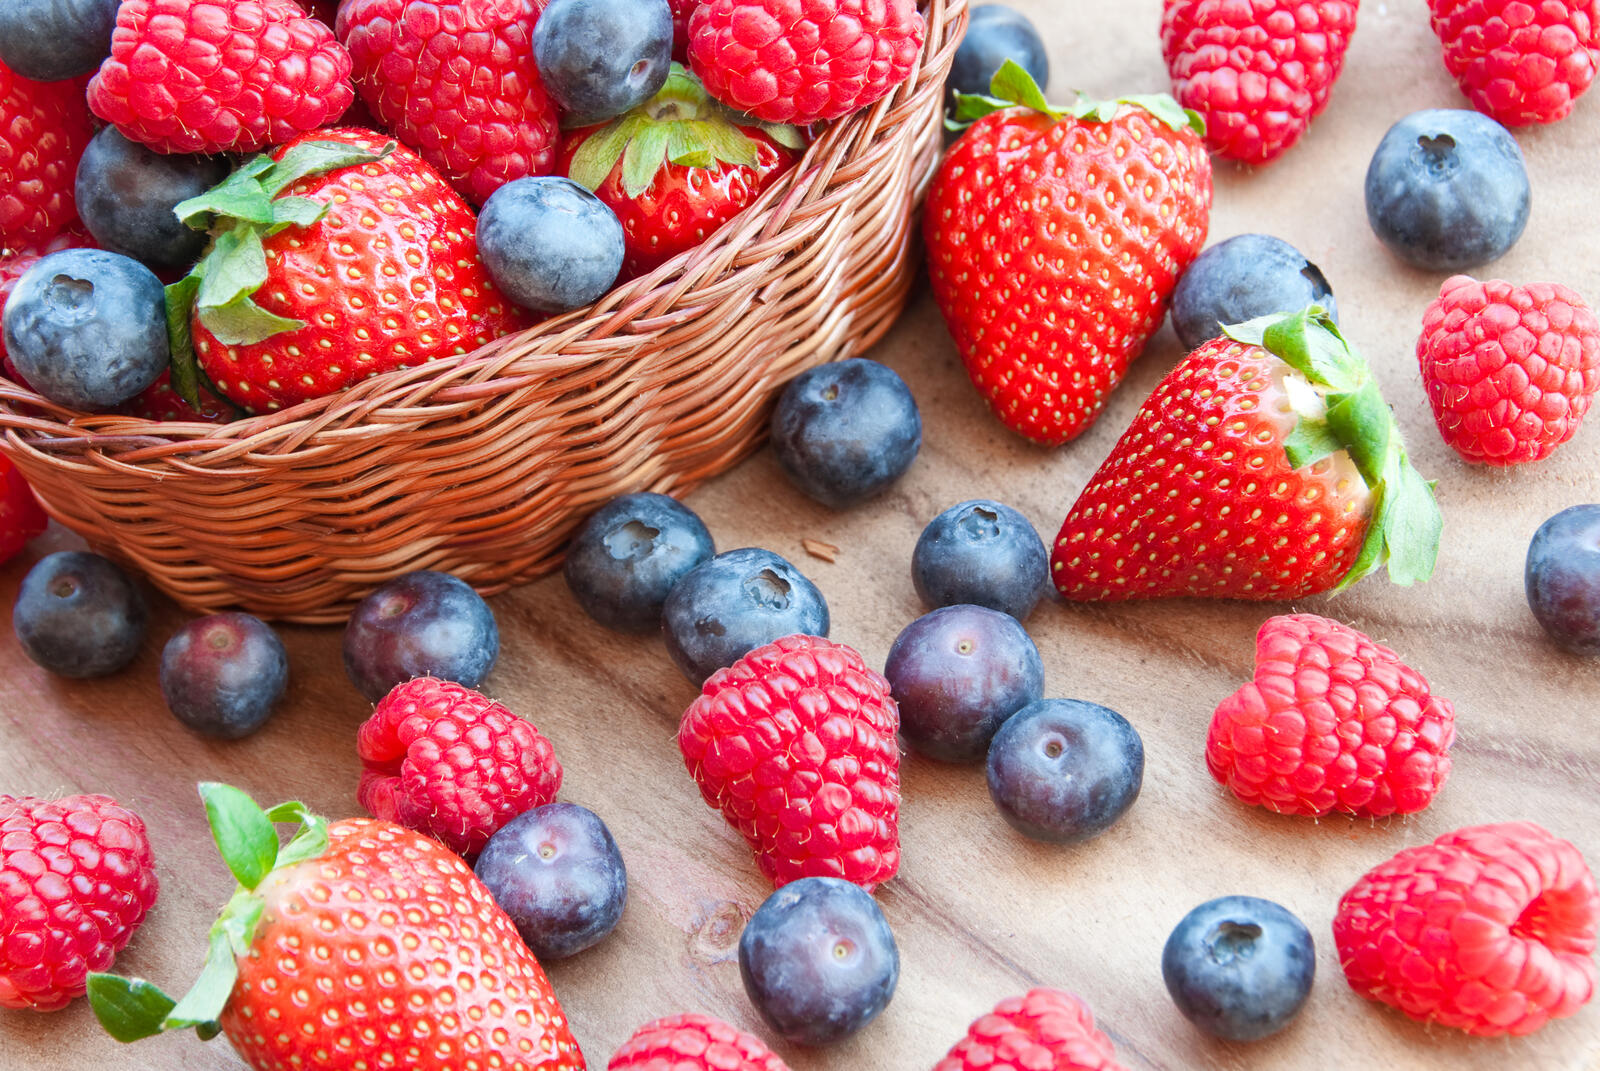 Wallpapers basket summer berries strawberries on the desktop